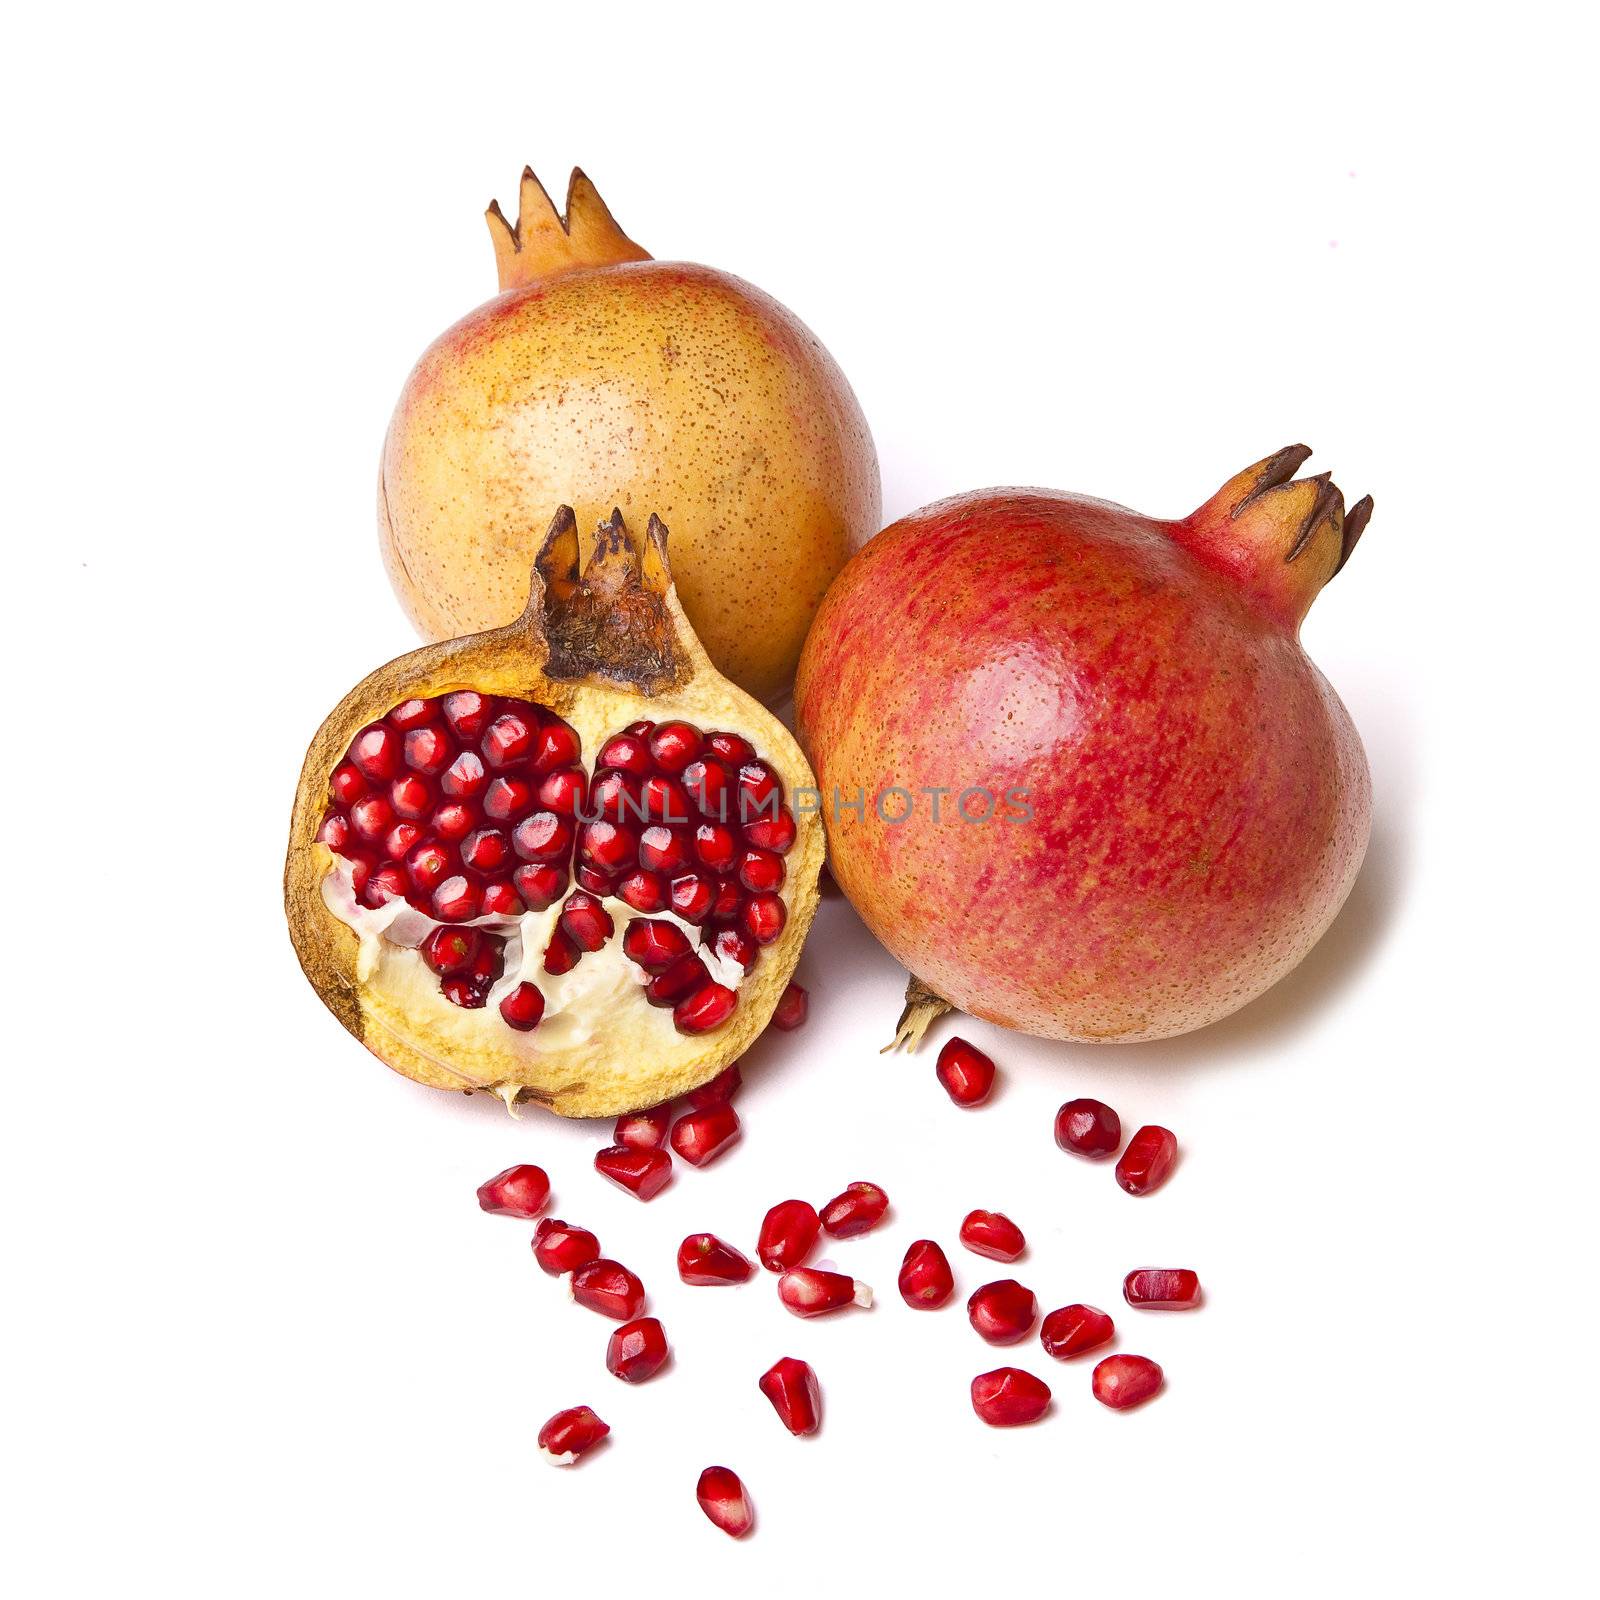 Pomegranate on white background, fruit - organic food